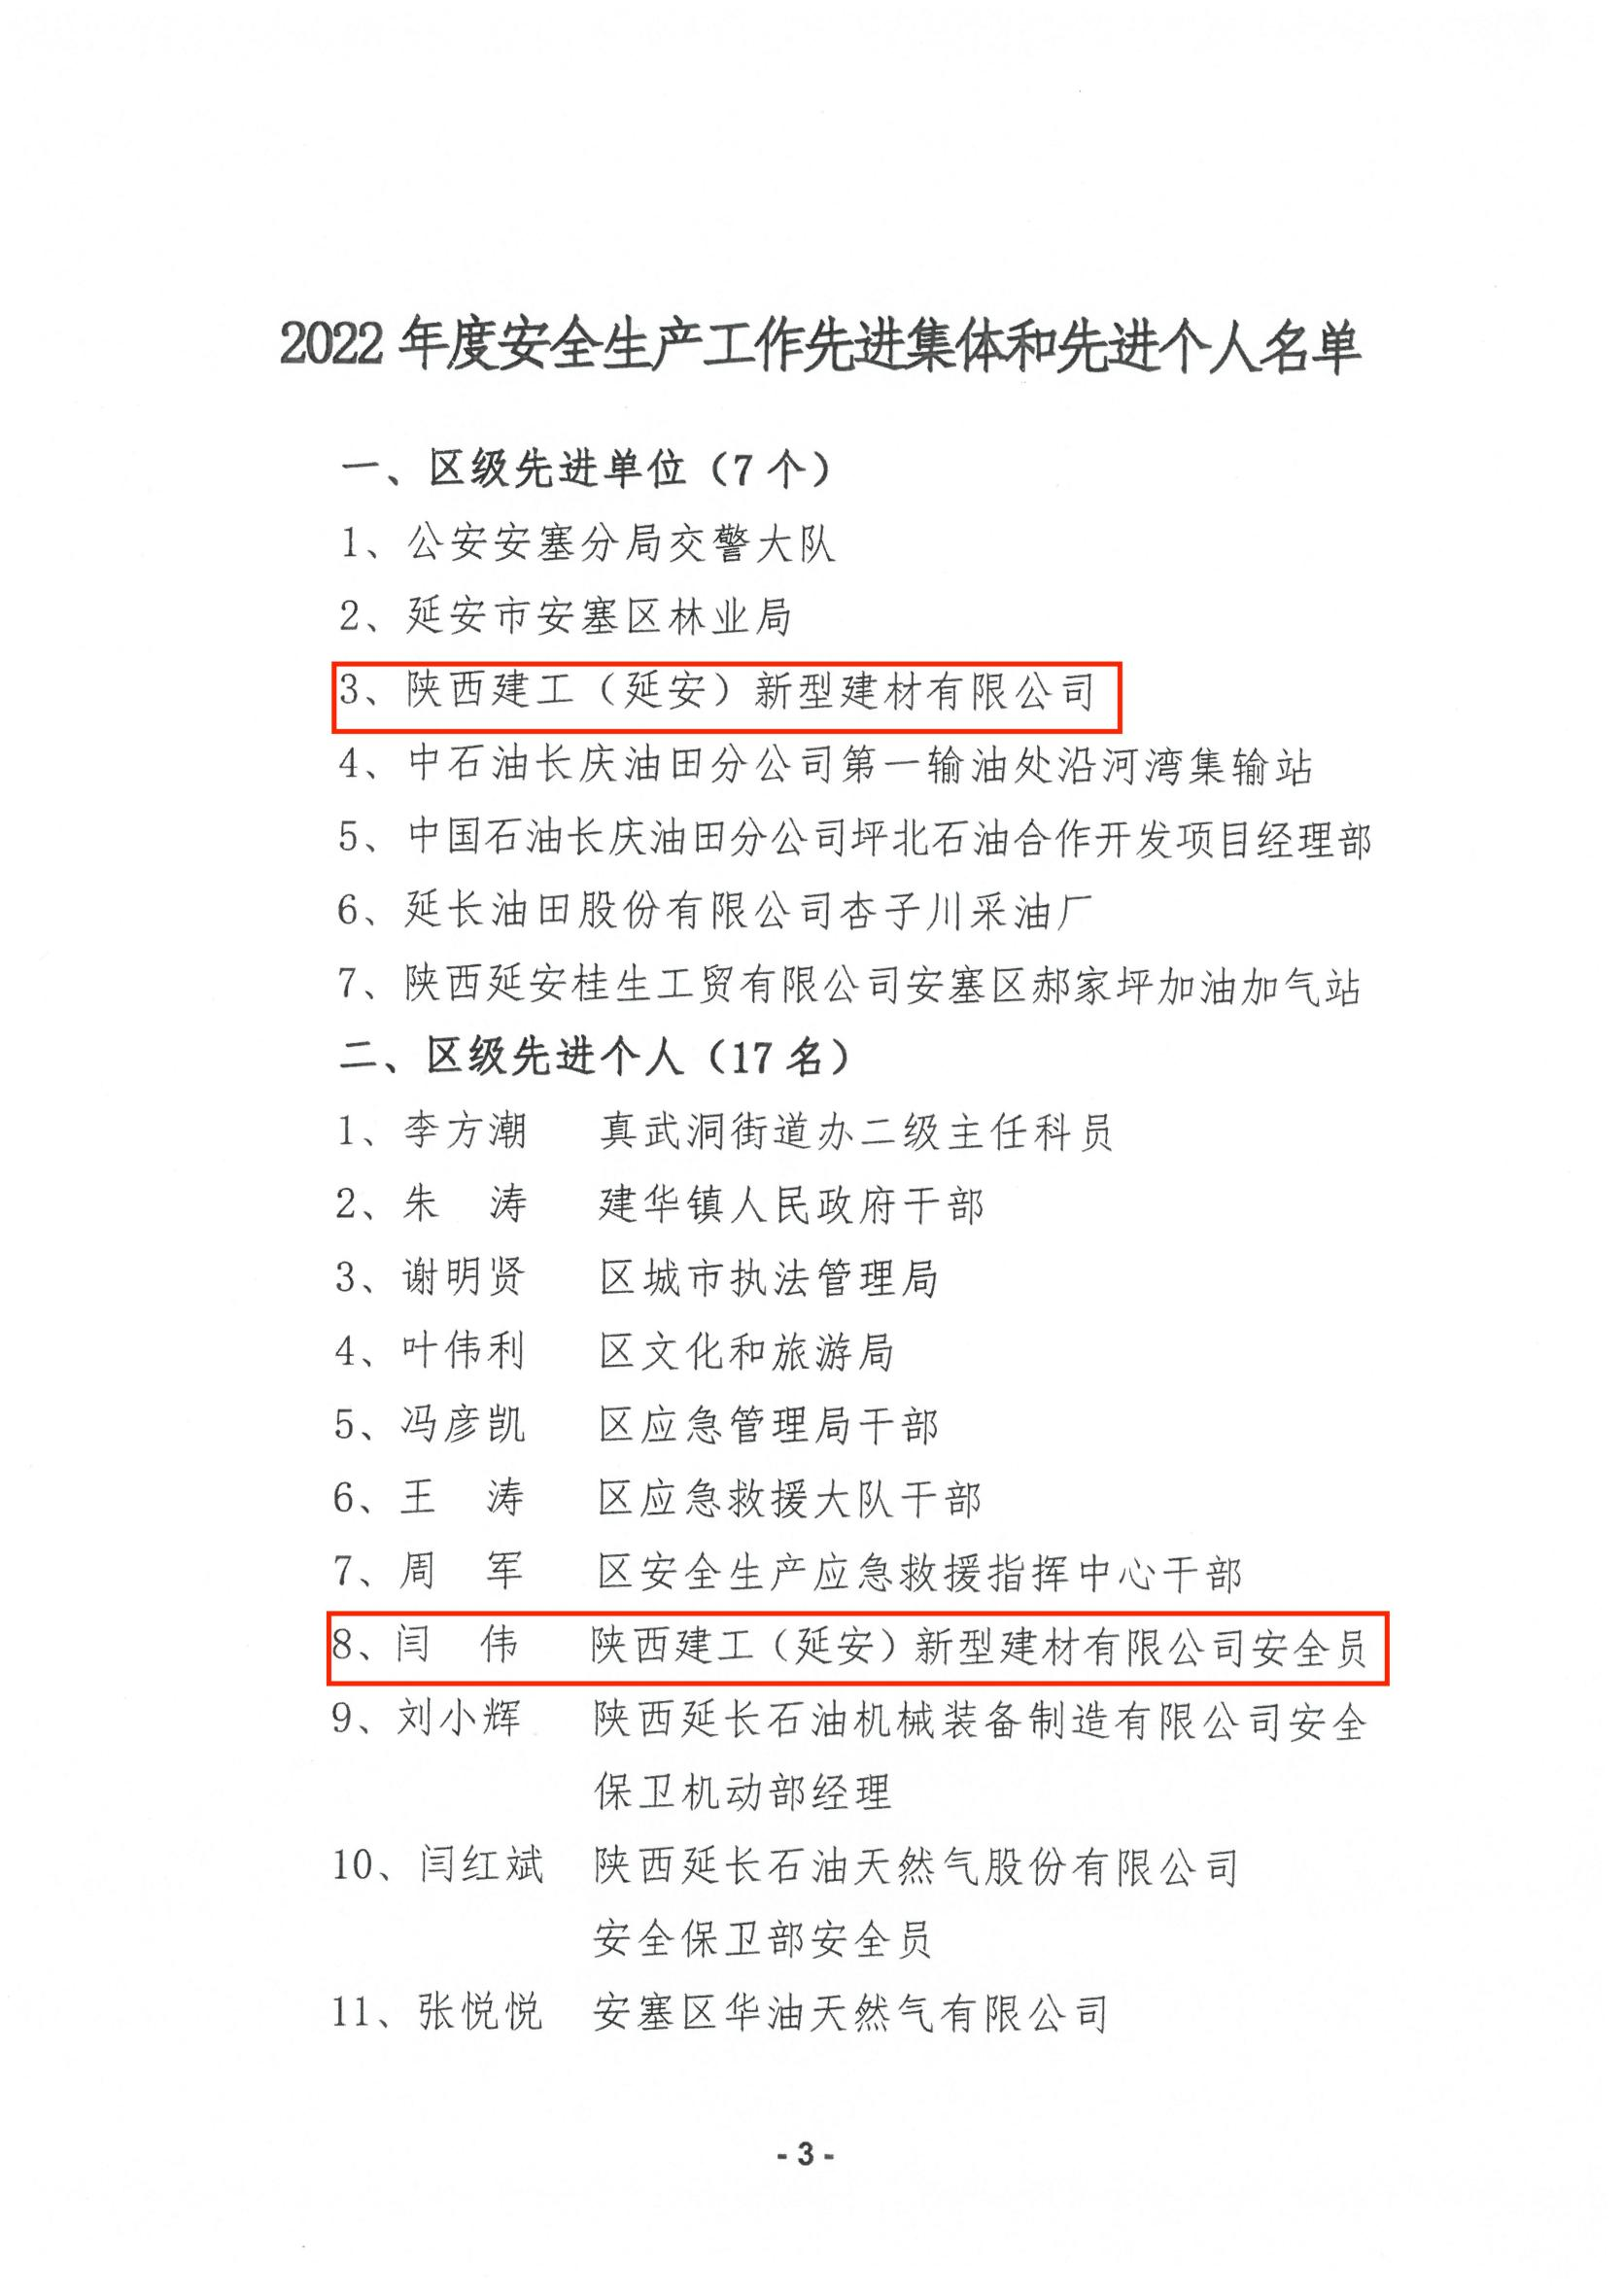 凯发·k8国际(中国)首页登录_活动6275